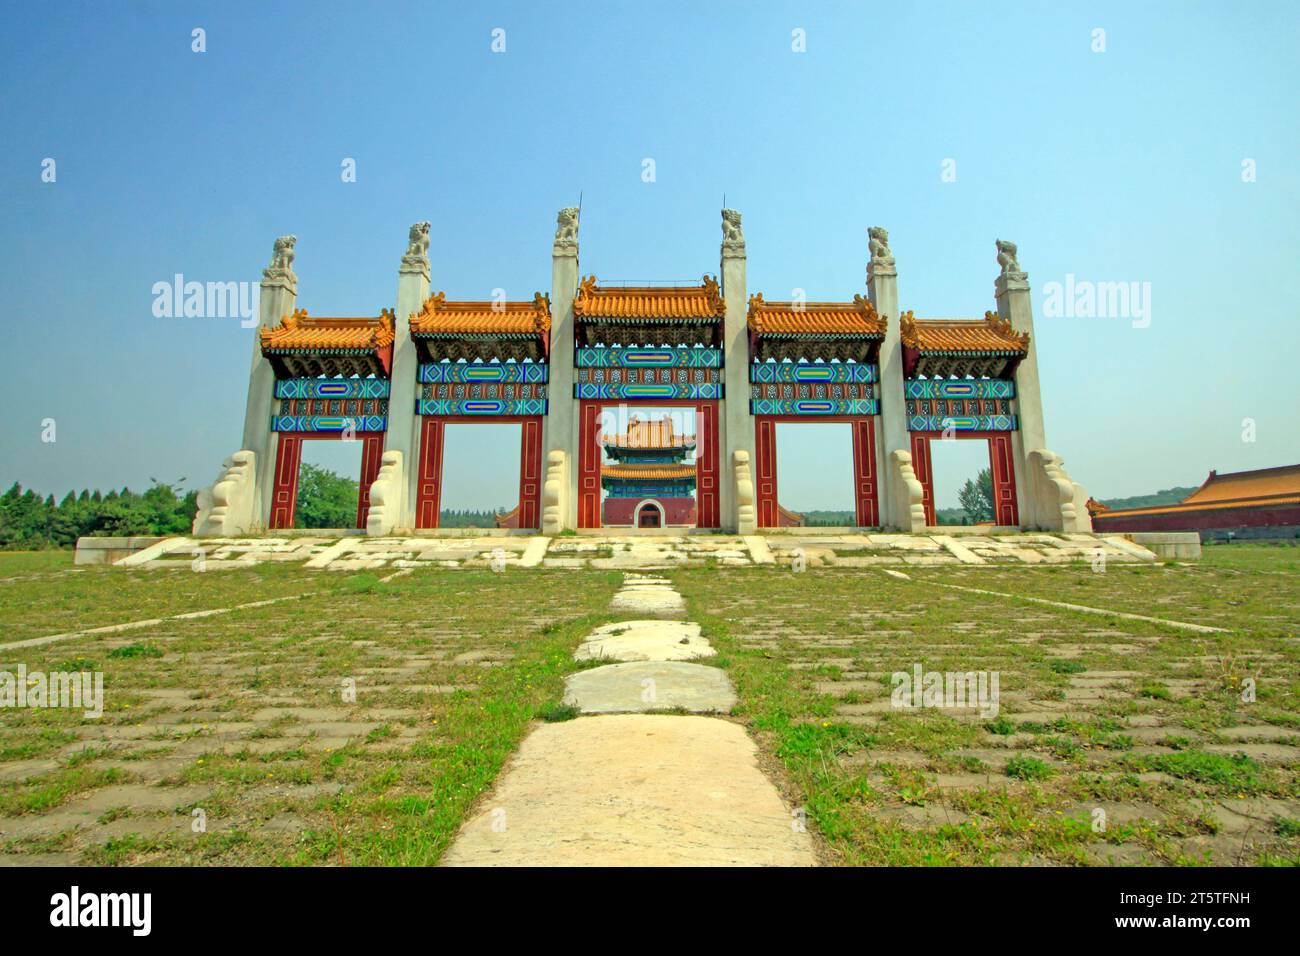 Città di Zunhua - 23 maggio: Architettura paesaggistica della porta del drago e della fenice nelle Tombe reali orientali della dinastia Qing, 23 maggio 2015, città di zunhua, hebei provi Foto Stock